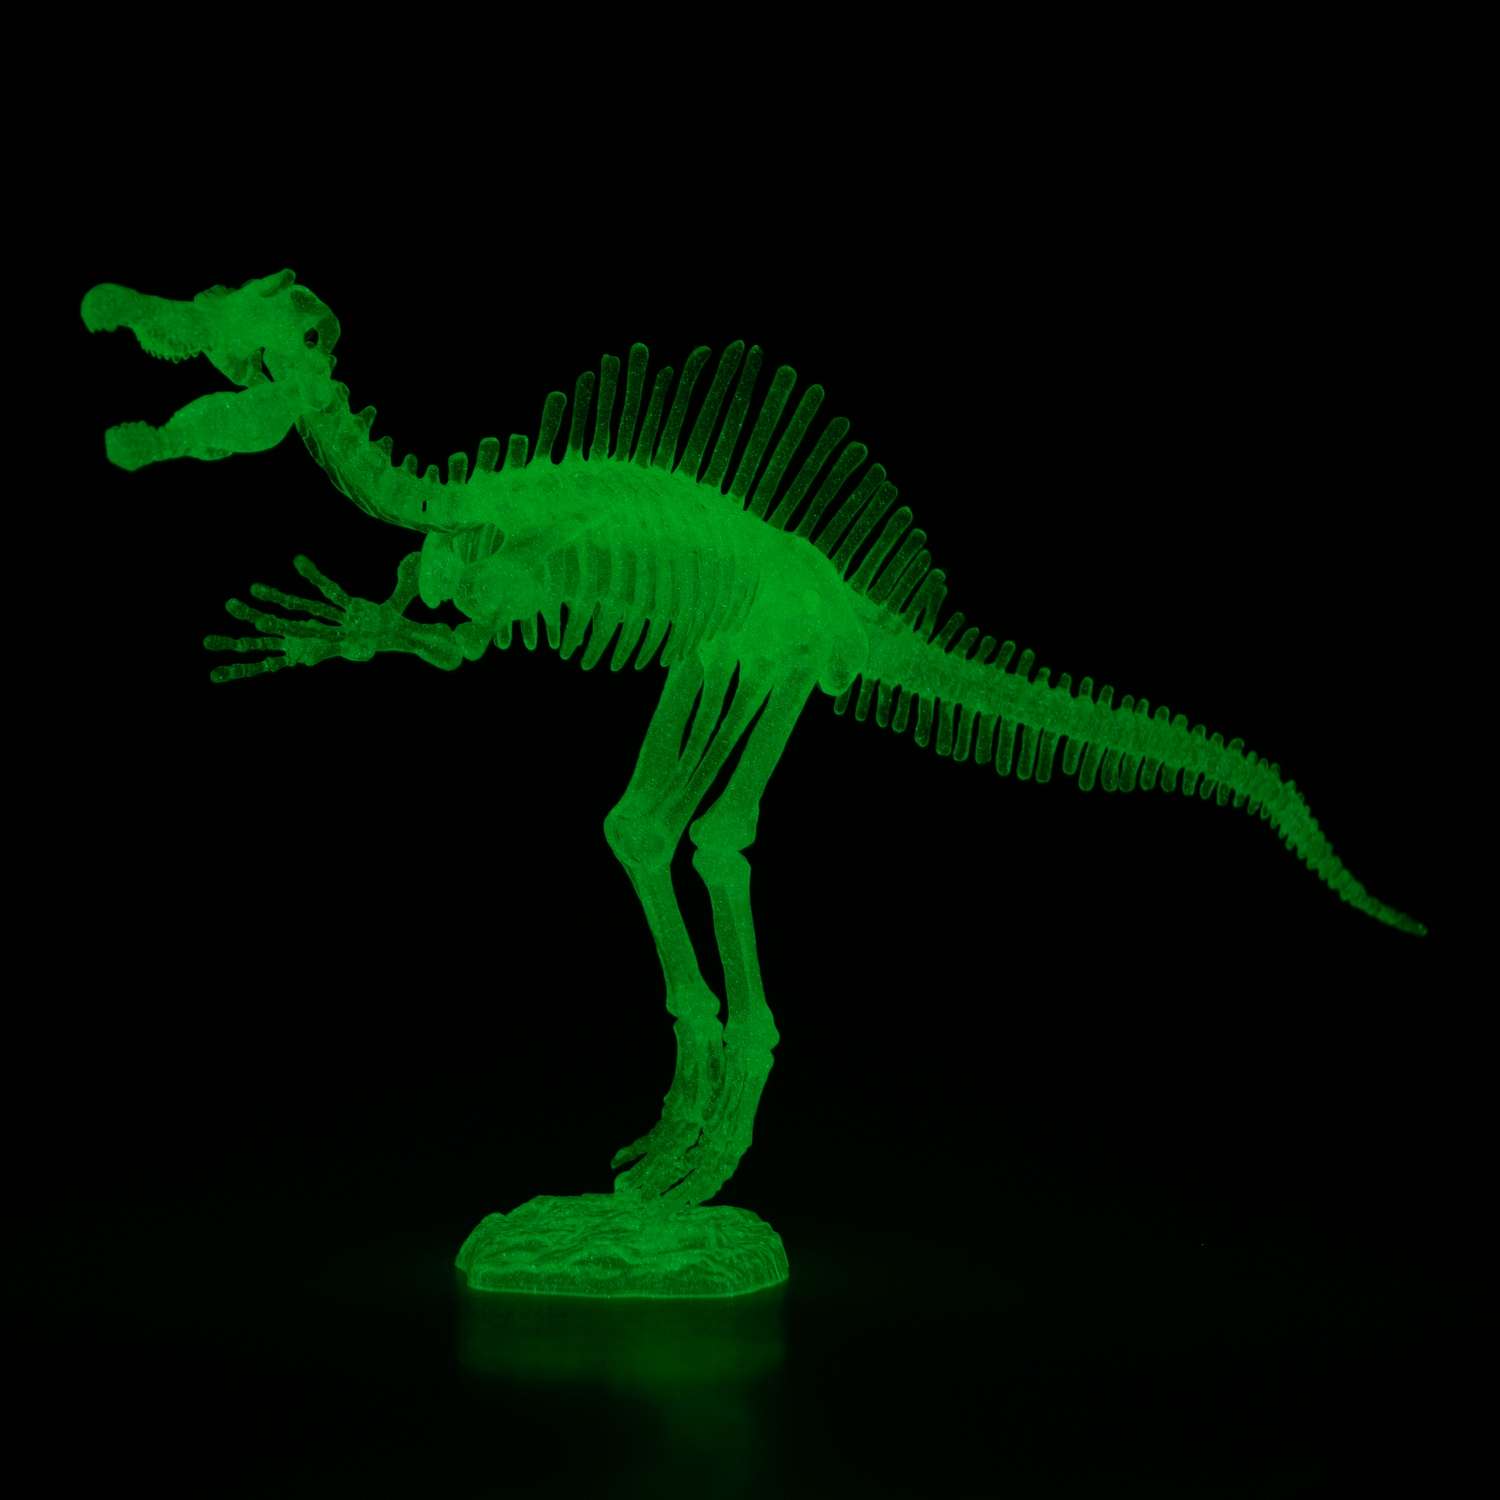 Сборная модель 1TOY 3dino luminus люминисцентный скелет динозавра - фото 2